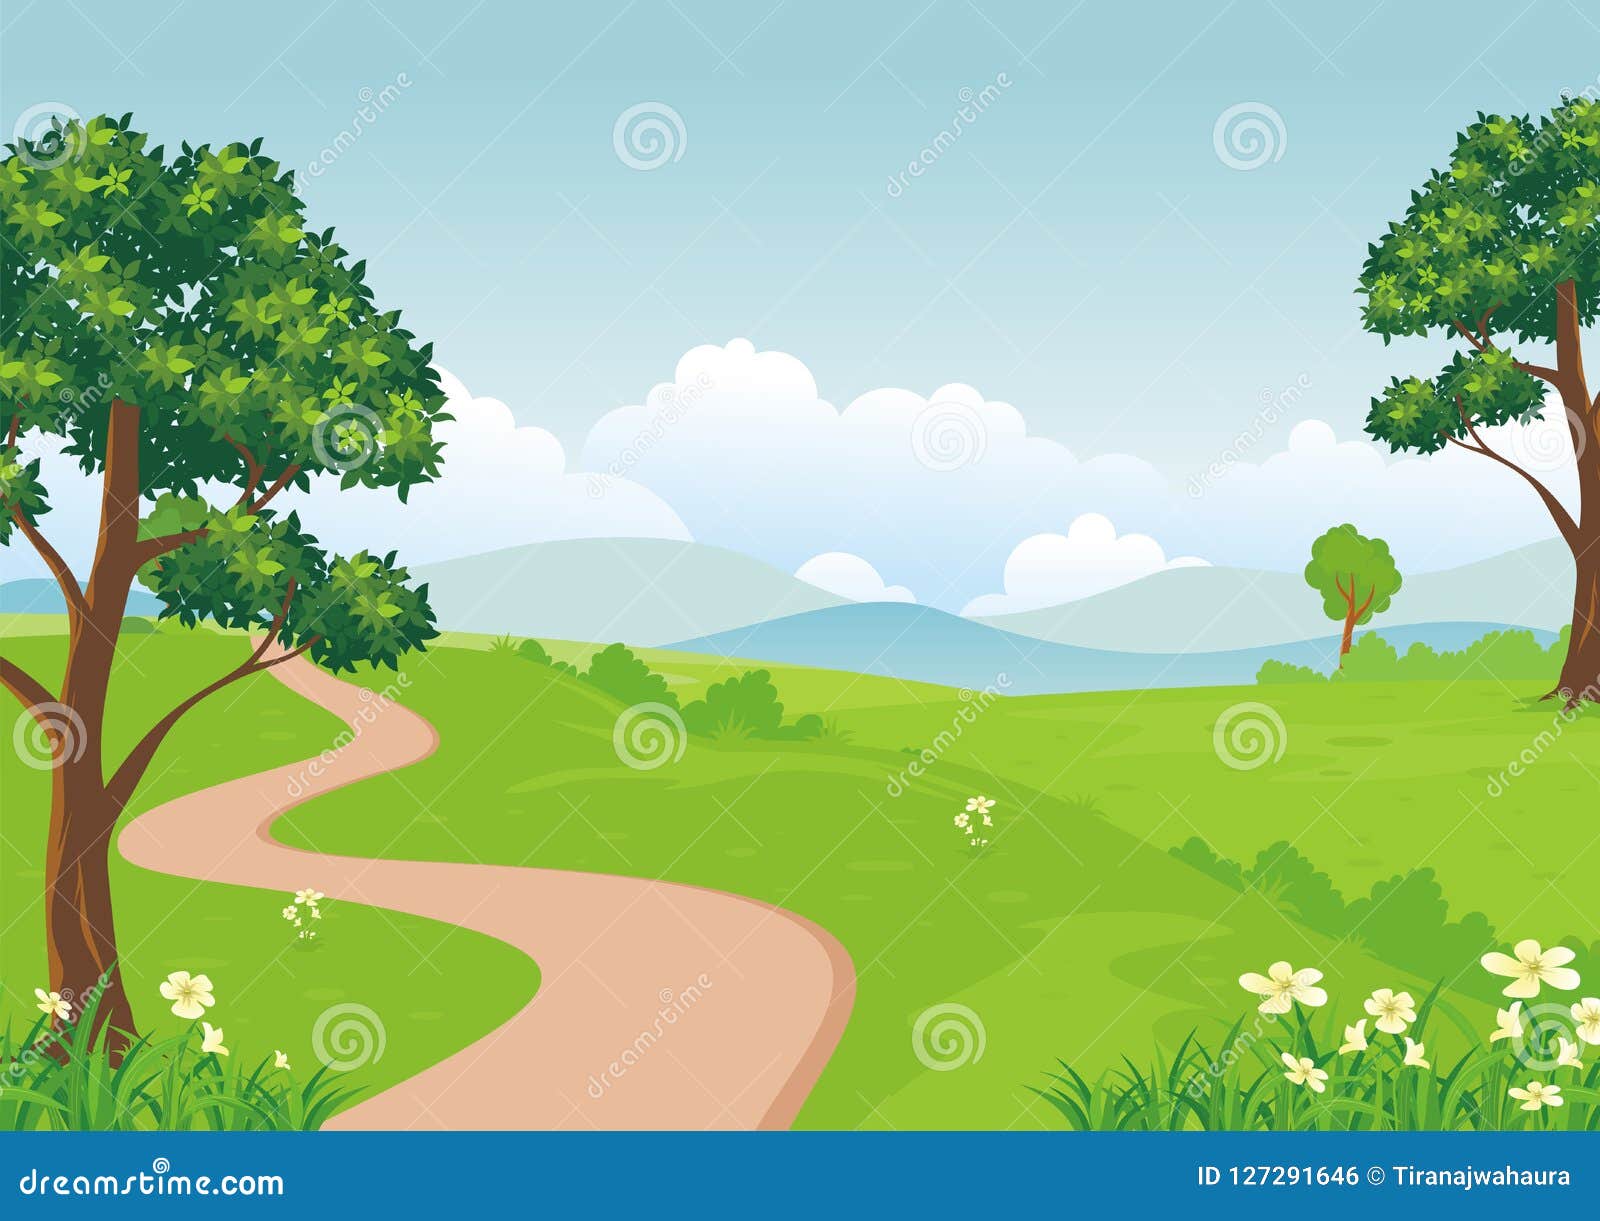 Bạn muốn một không gian đẹp và đáng yêu như trên các bộ phim hoạt hình? Hãy xem hình ảnh phong cảnh hoạt hình đáng yêu, với những cánh đồng lúa xanh tươi, cây cối xanh um, sẽ mang đến cho bạn sự thư giãn và niềm vui khi xem.